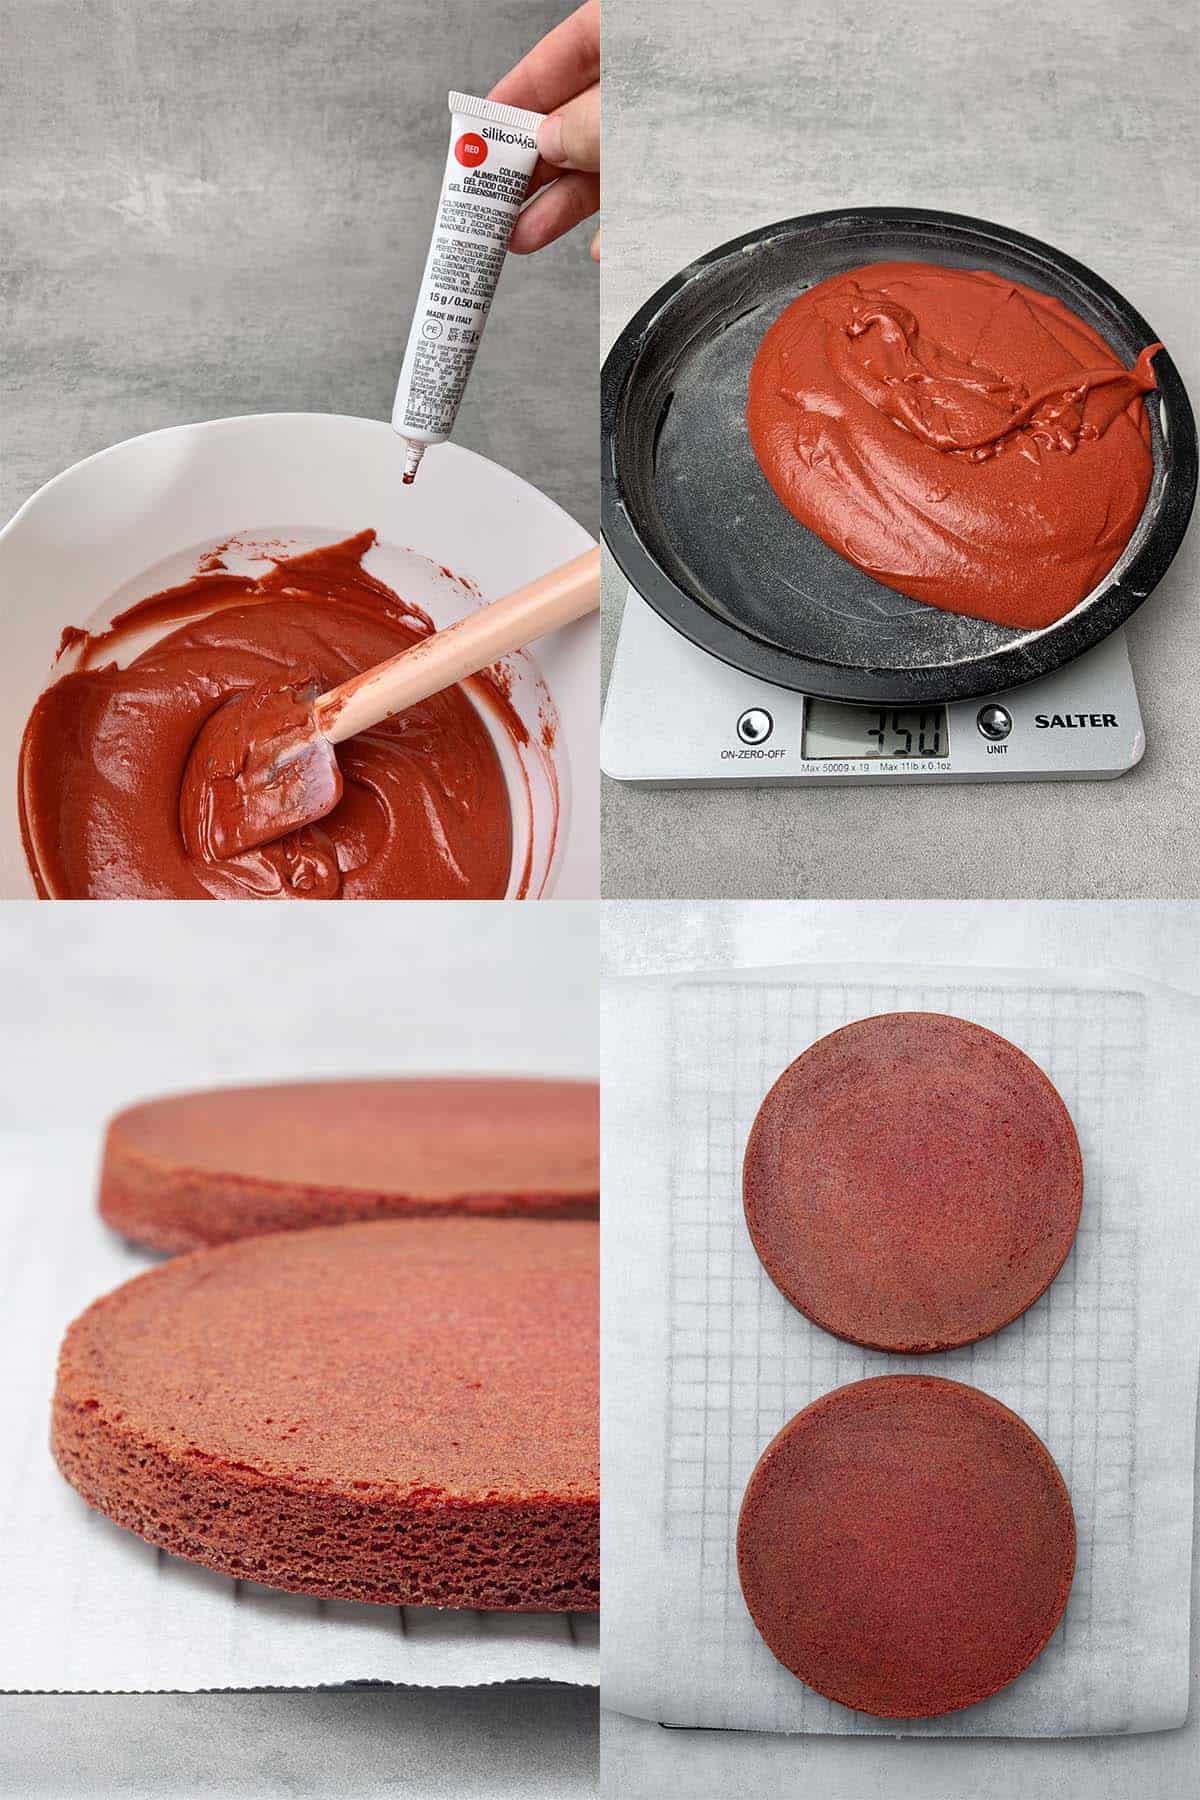 Red velvet cake process